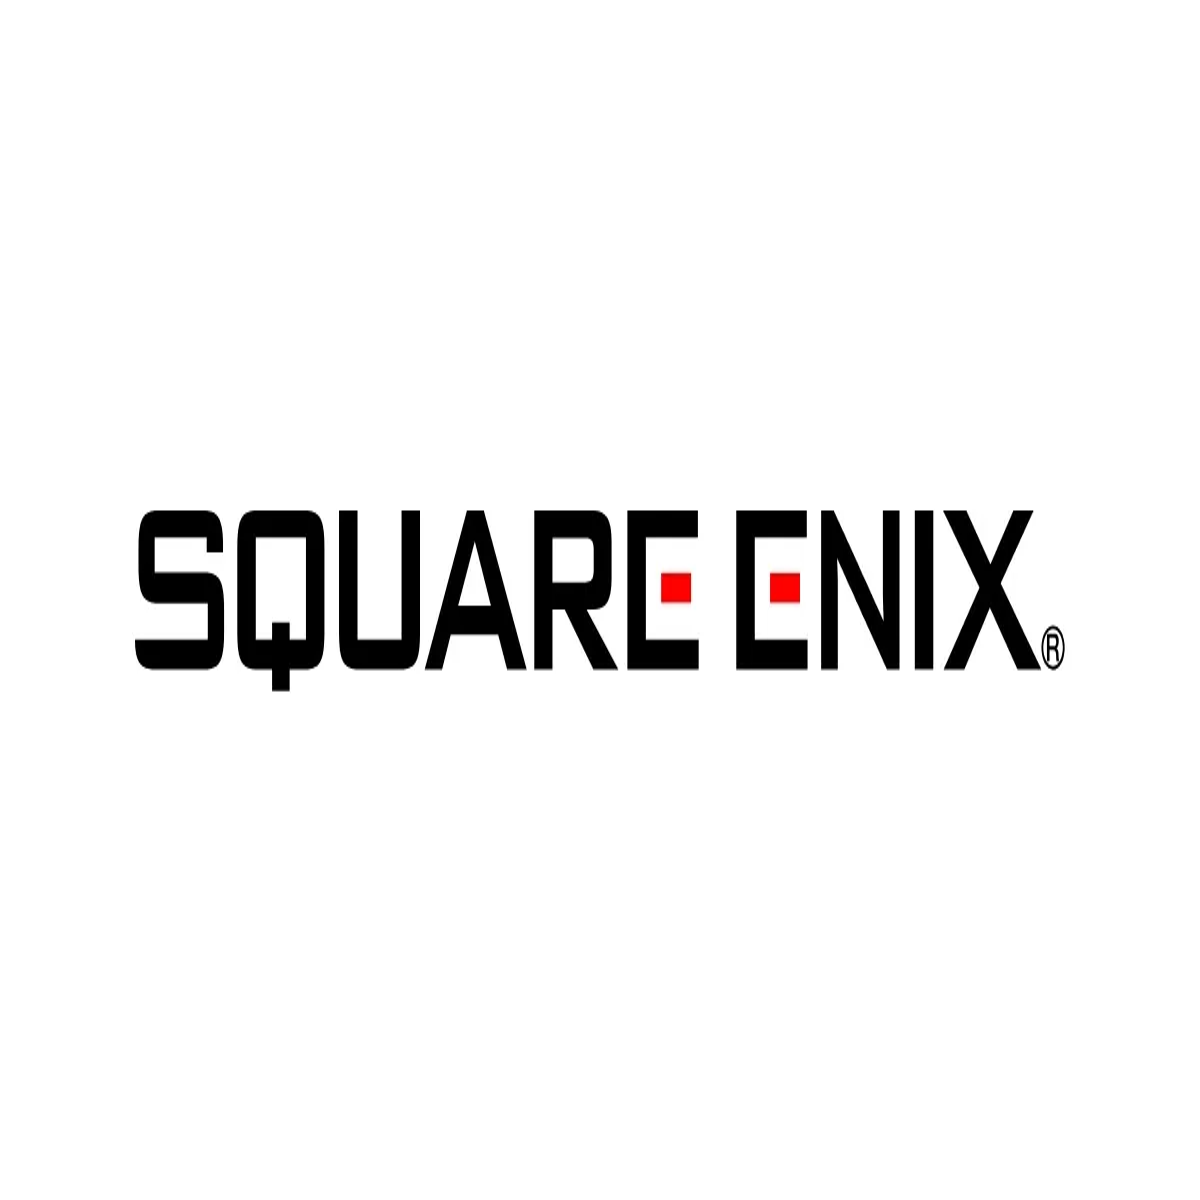 El presidente de Square Enix afirmó que impulsará agresivamente el